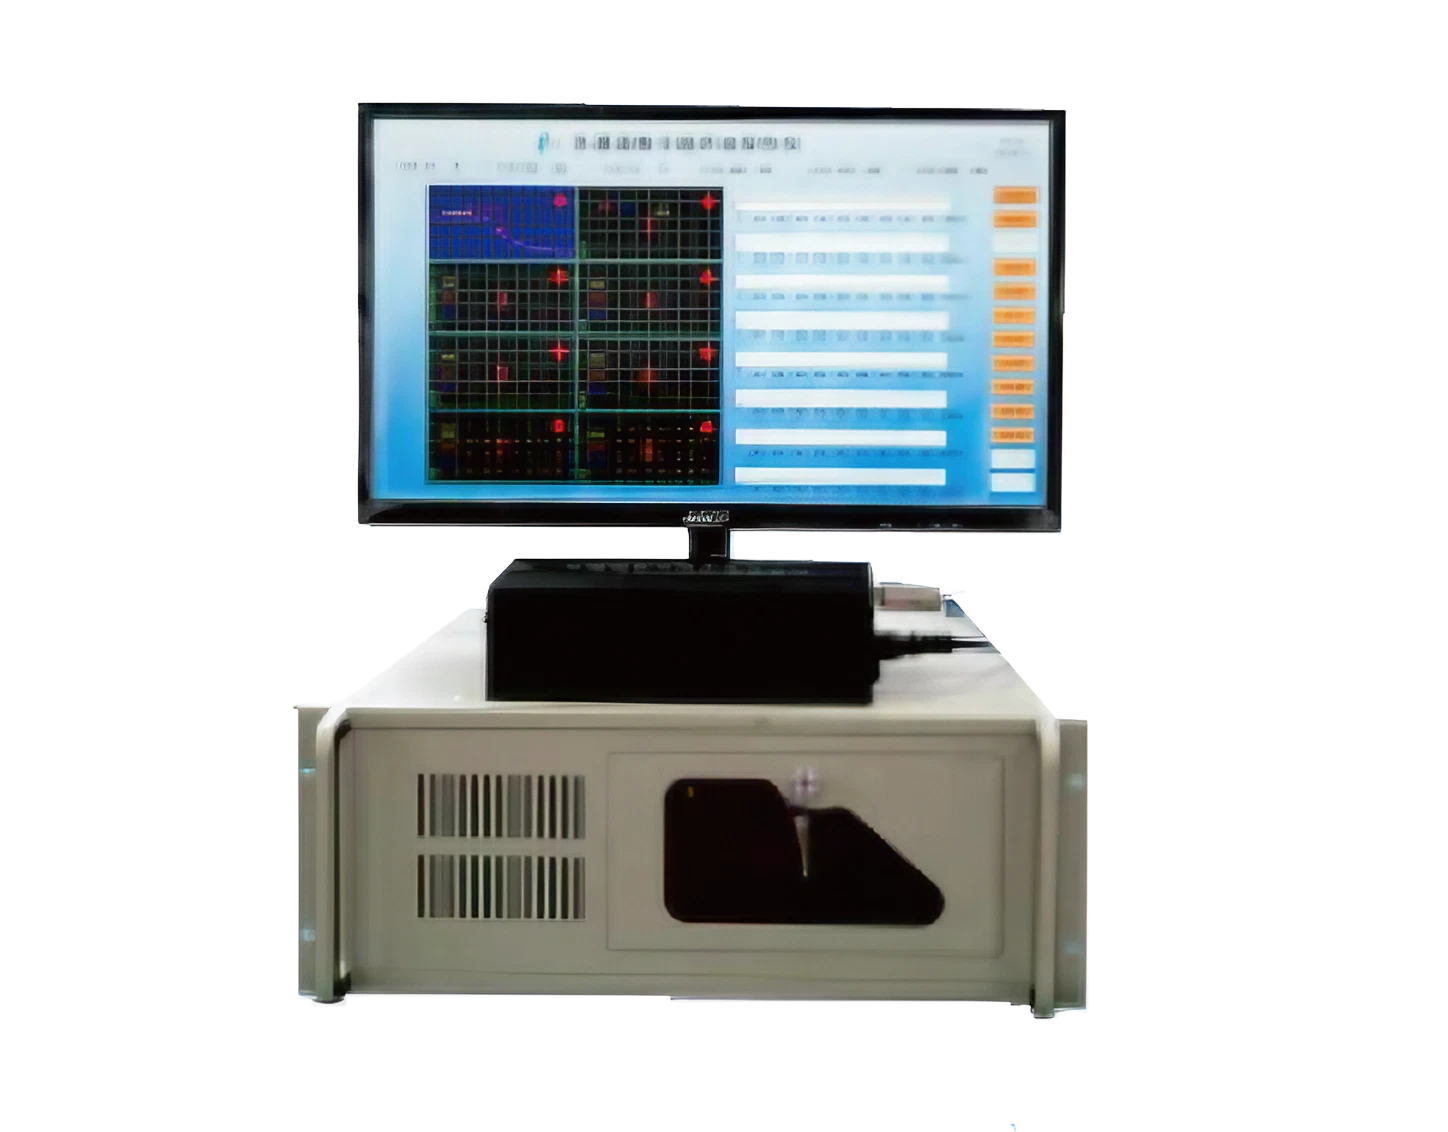 Multi-channel digital ultrasonic flaw detector